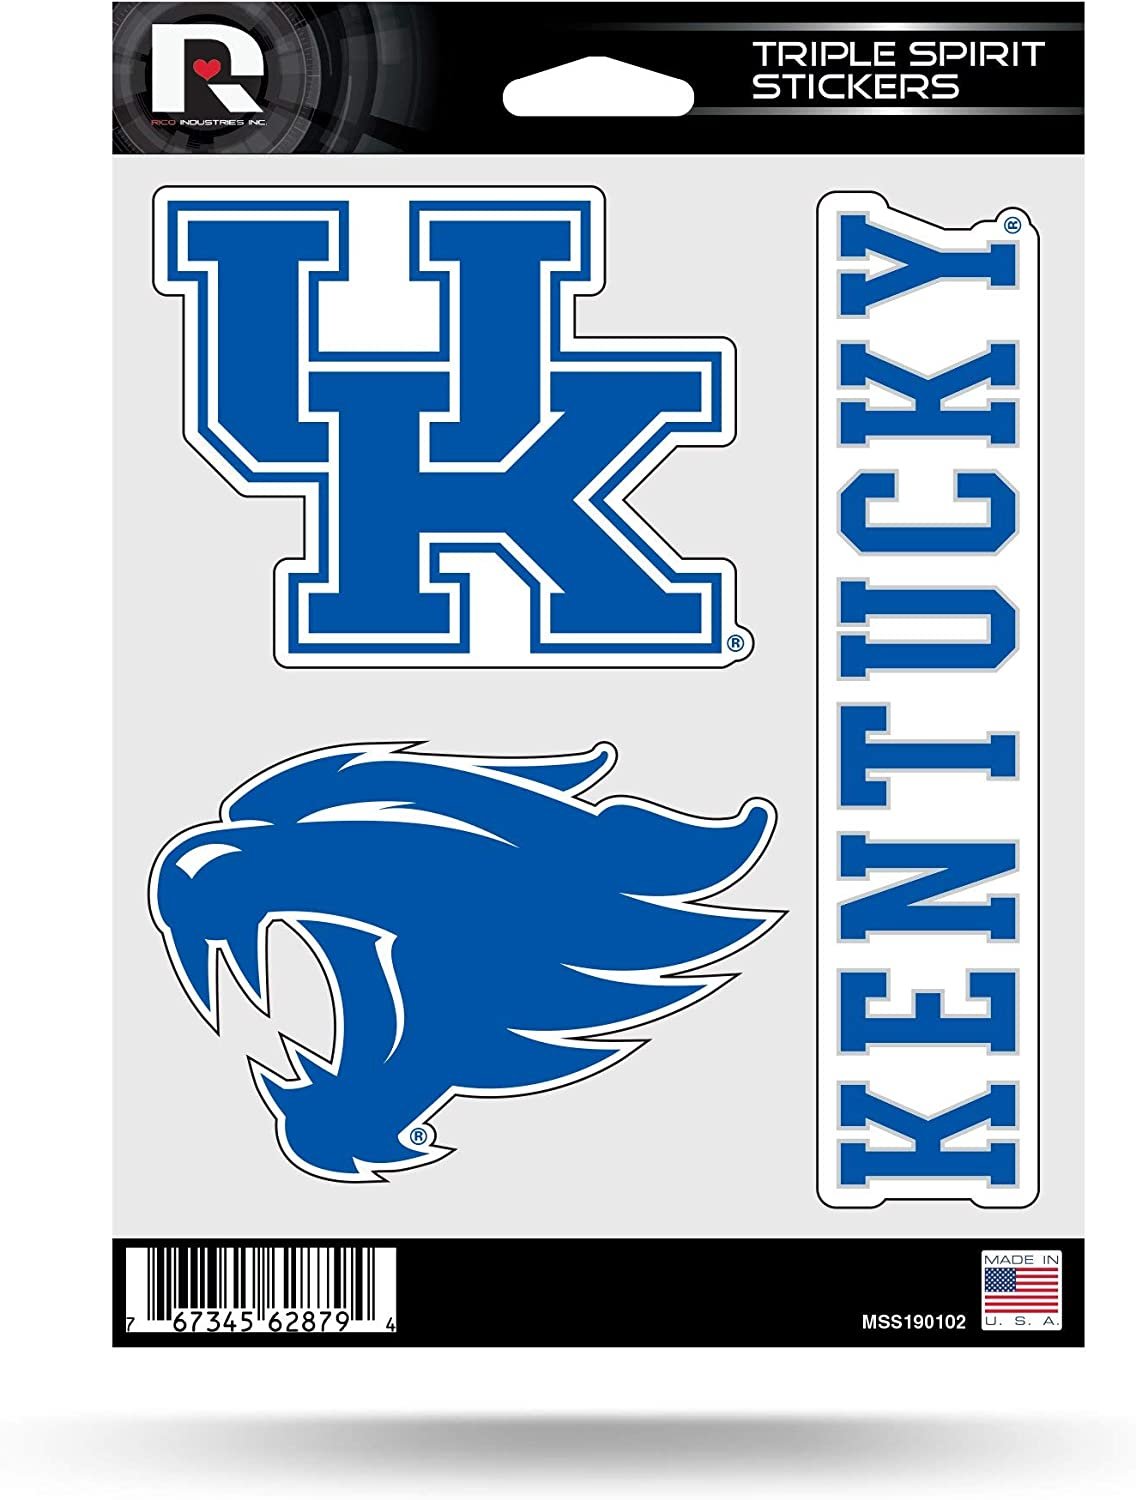 University of Kentucky Wildcats Sticker Decal Sheet 3-Piece Die Cut 5x7 Inch